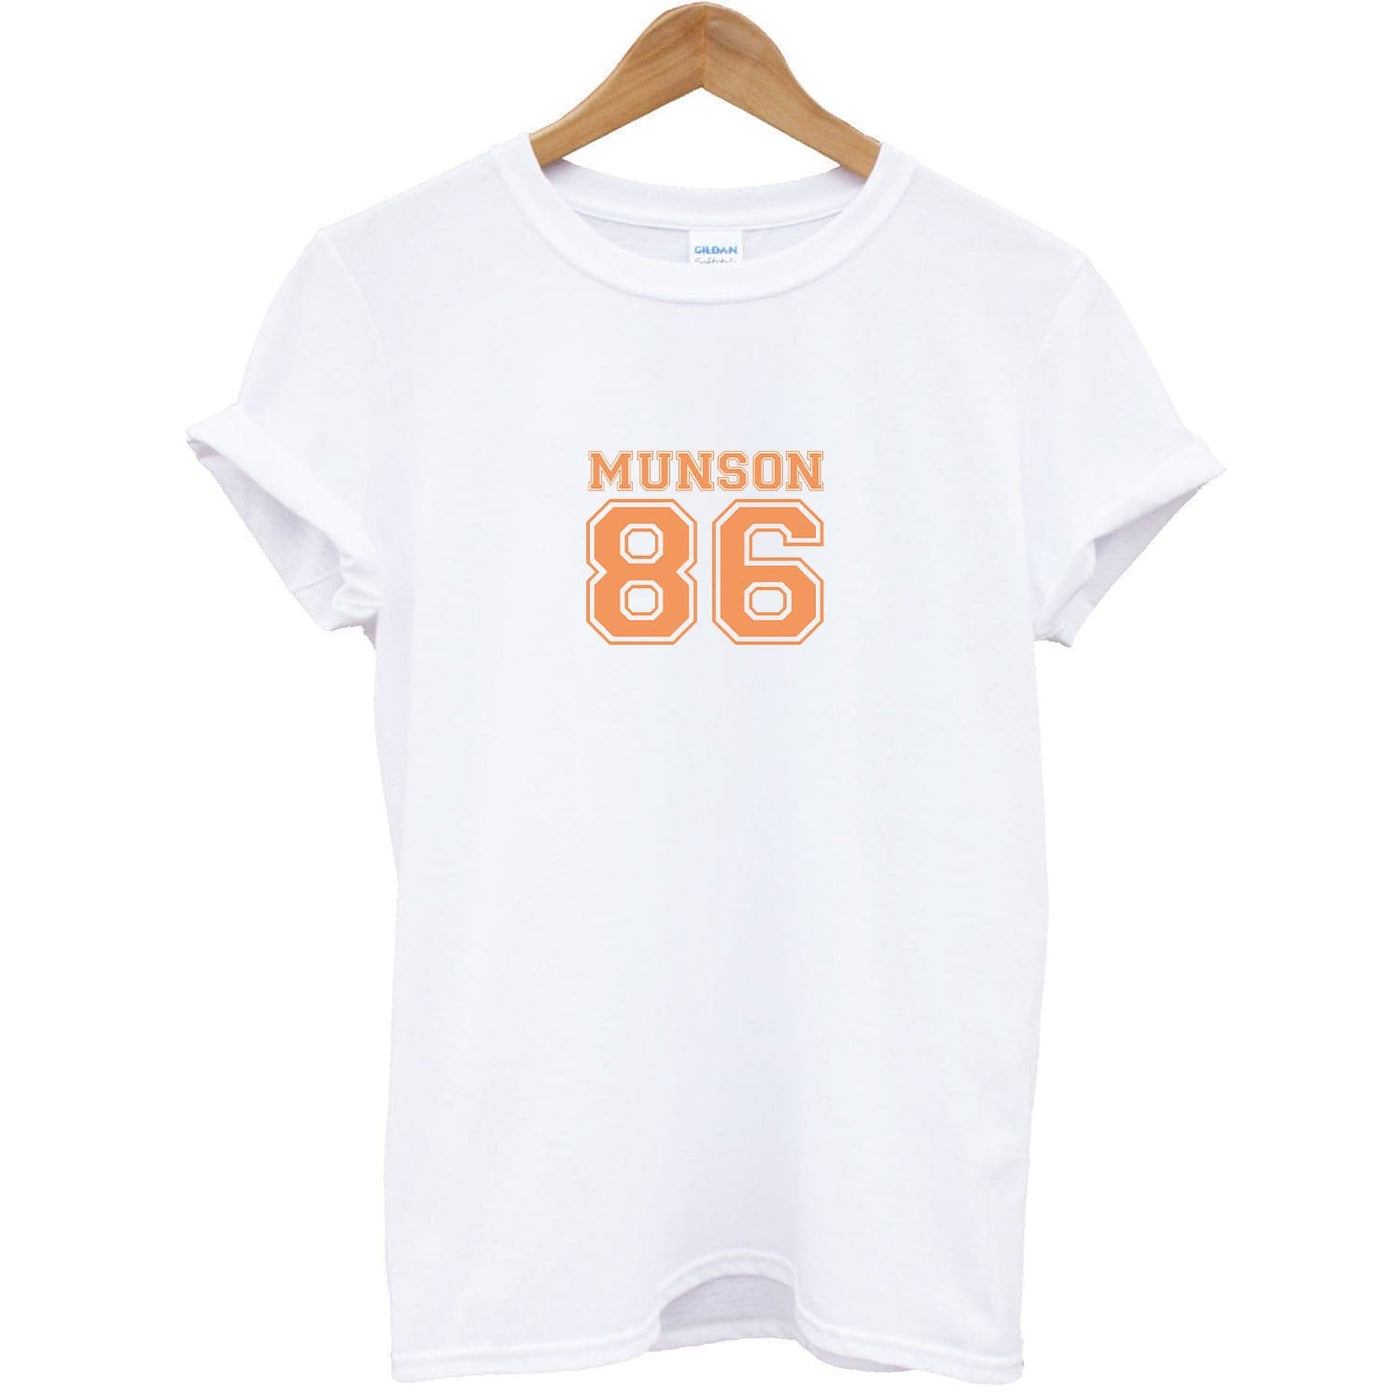 Eddie Munson 86 - Orange T-Shirt